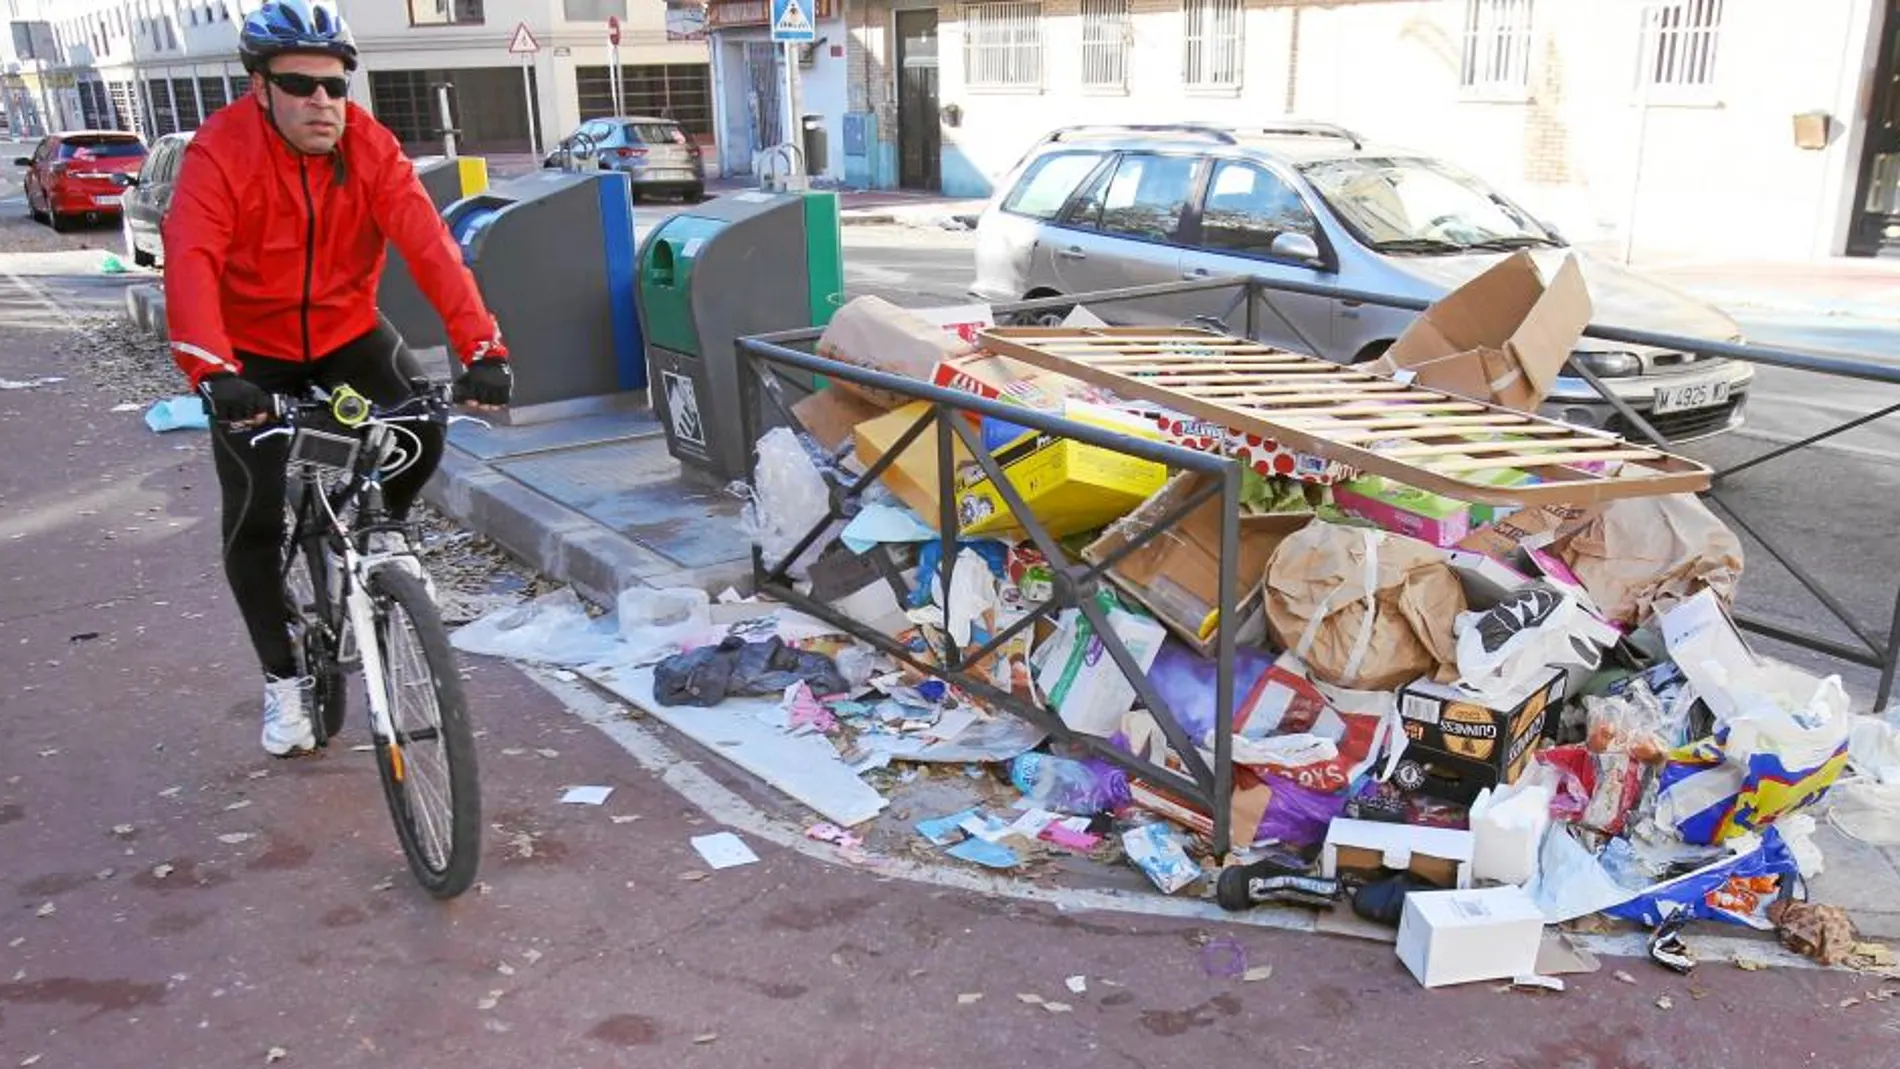 Los trabajadores no recogen las basuras, que se acumularon todo el fin de semana en los puntos limpios municipales